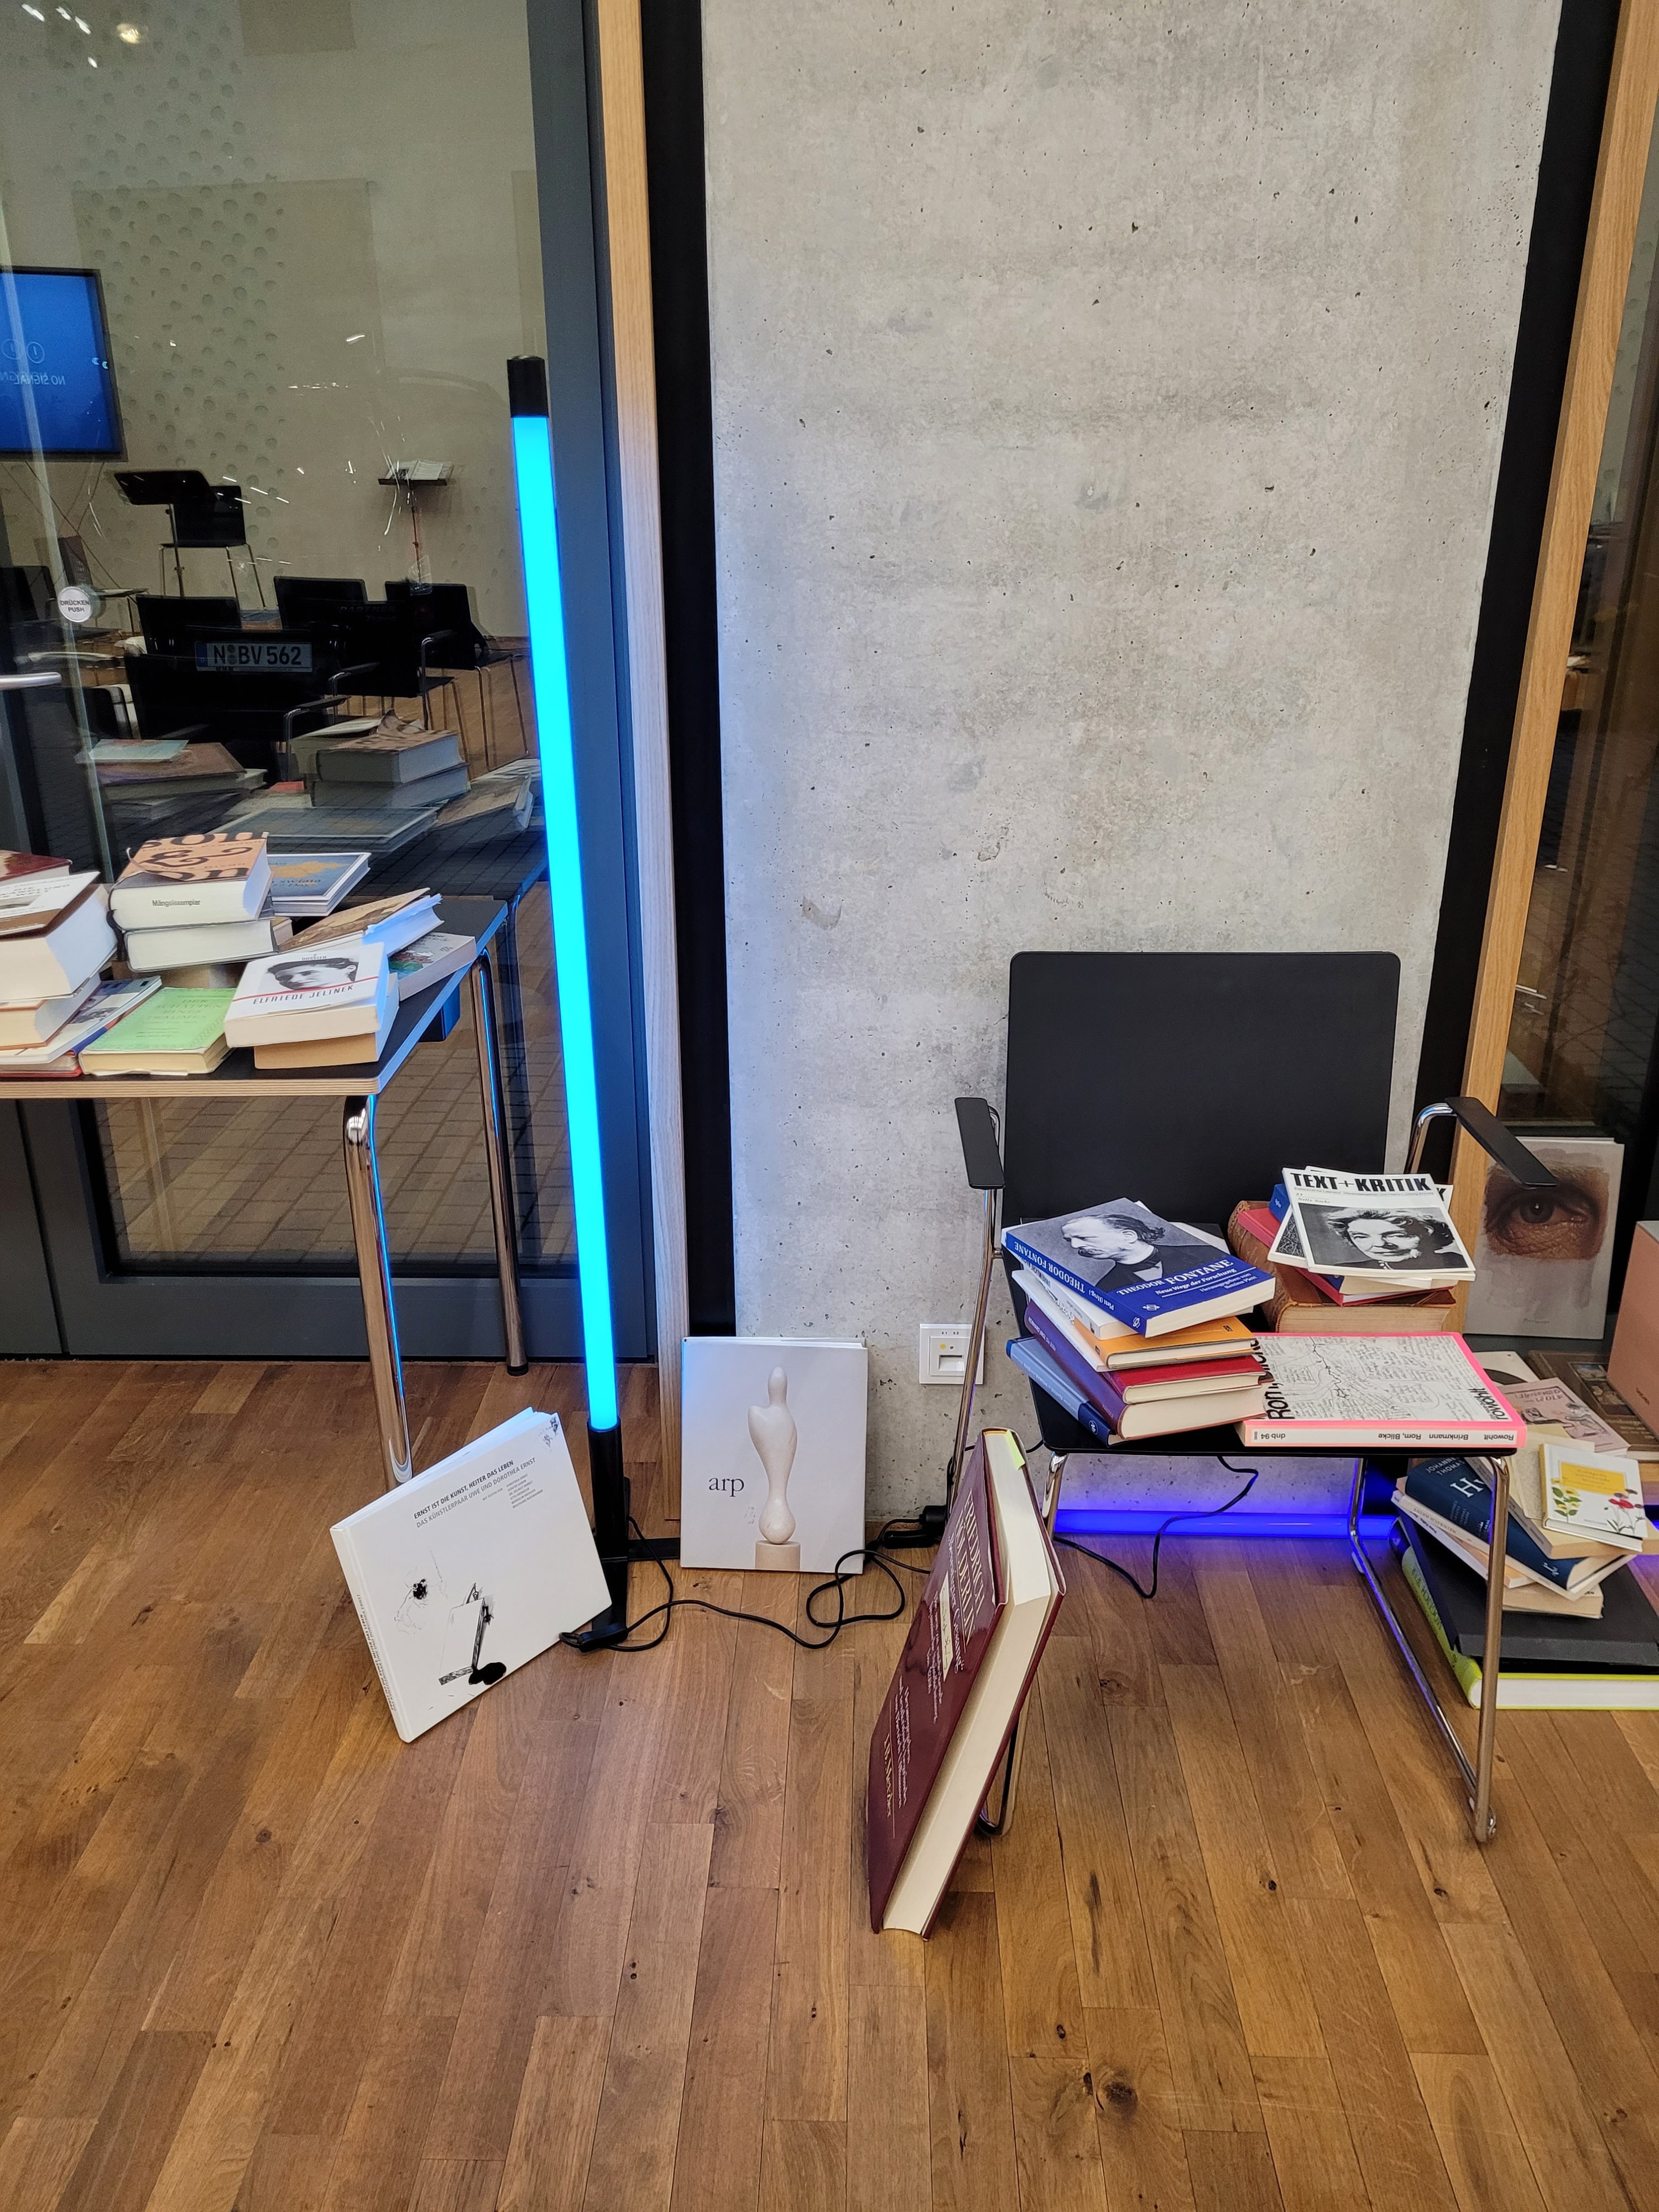 Bücher, wild drappiert auf Tisch und Stuhl in der Mitte eine blaue Leuchtstoffrühe